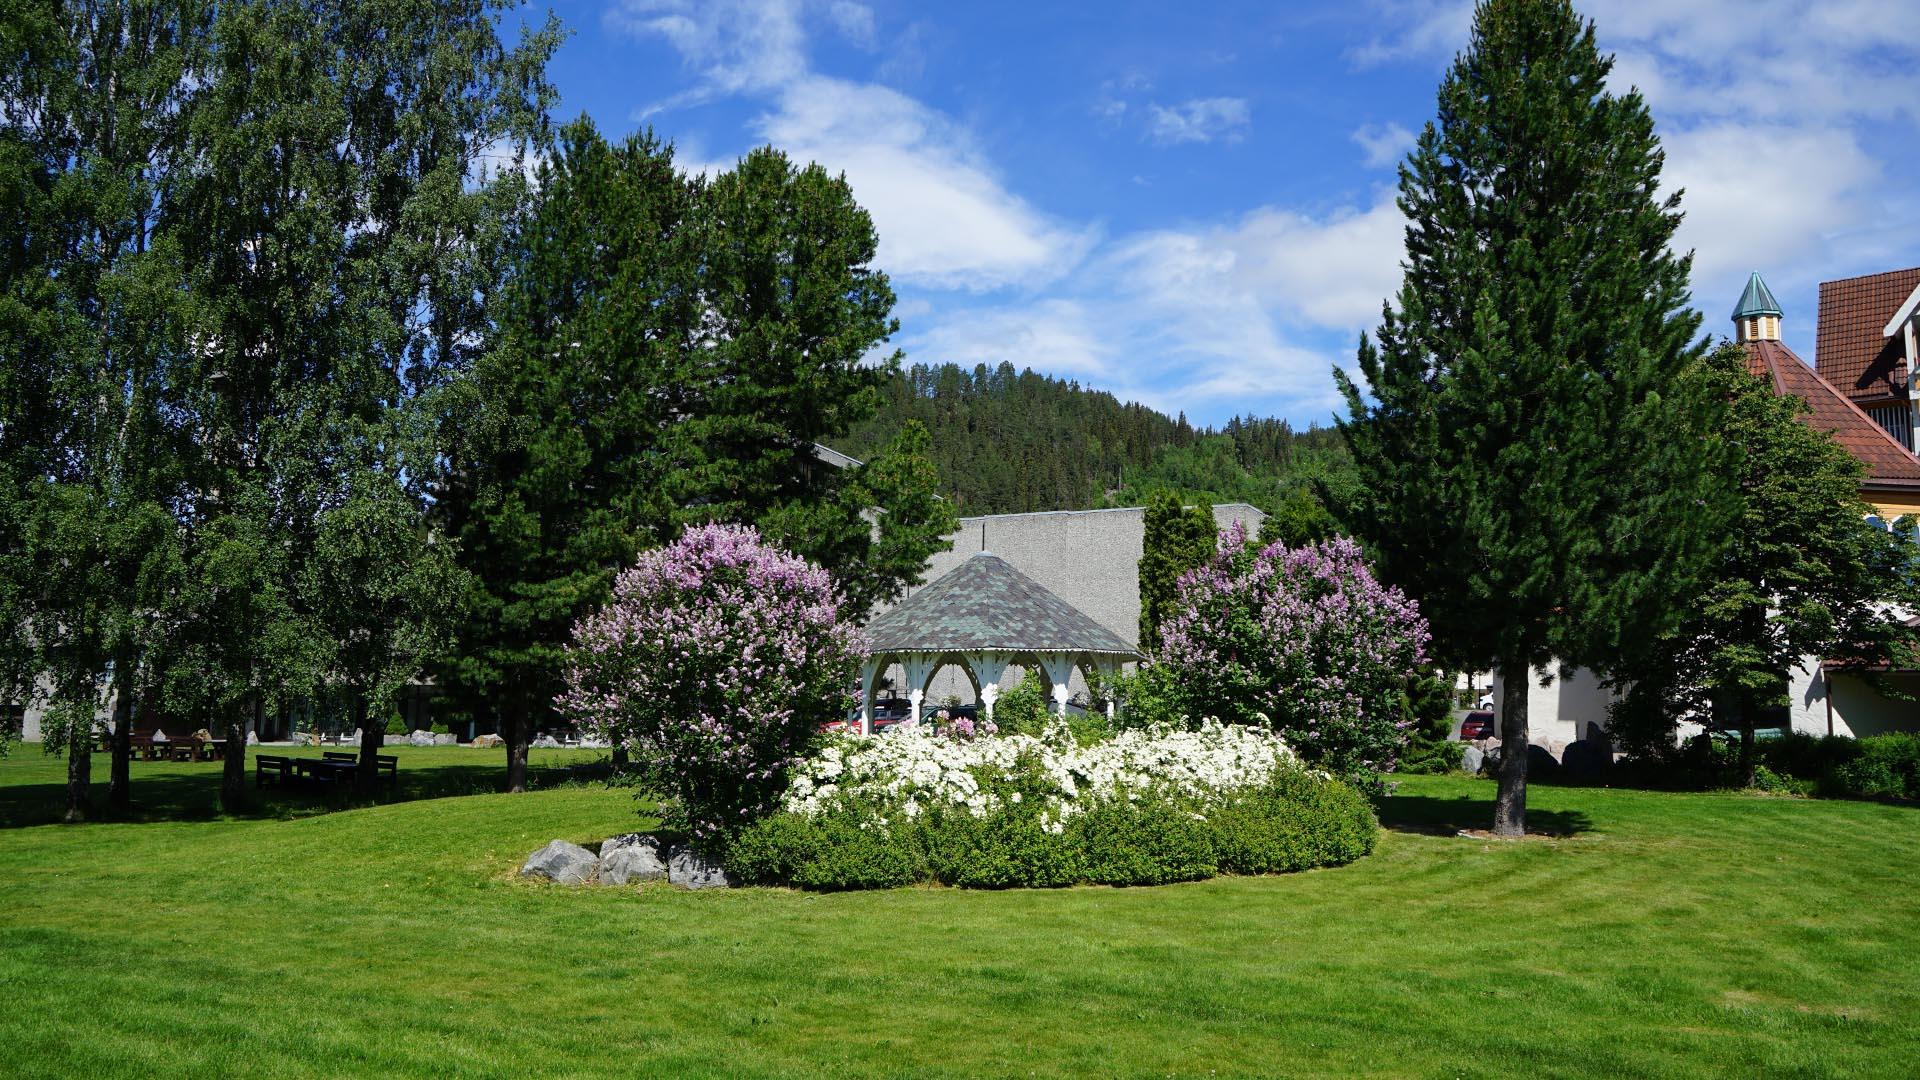 I en park med plen og blomsterbed og blomstrende syrinbusker rundt en hagepaviljong. I bakgrunnen står noen høye trær.